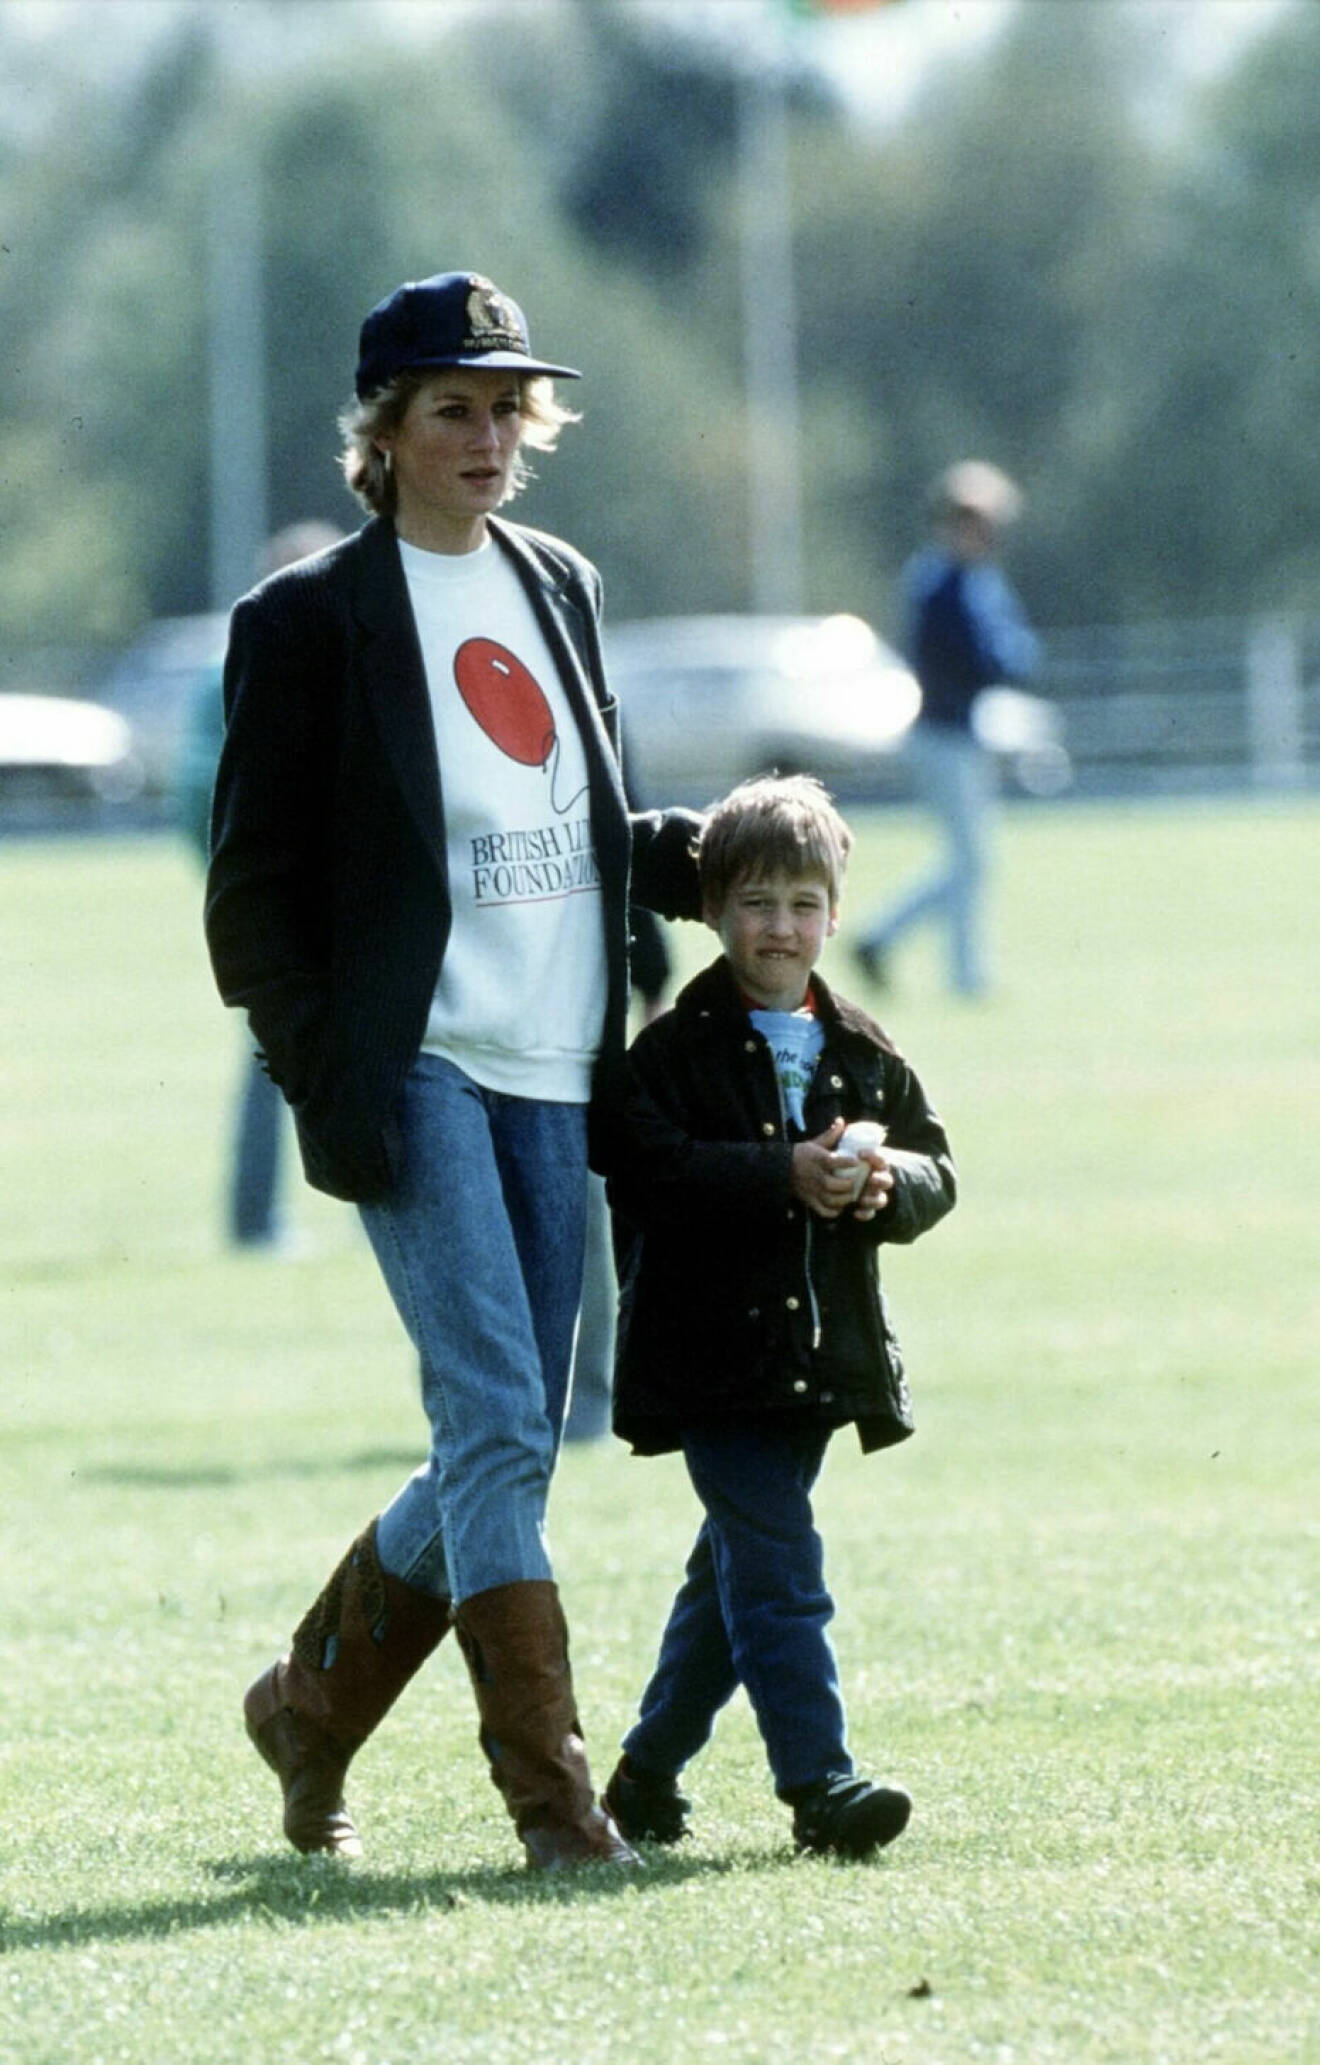 Diana i jeans, kavaj, sweatshirt och keps på hästpolo 1988